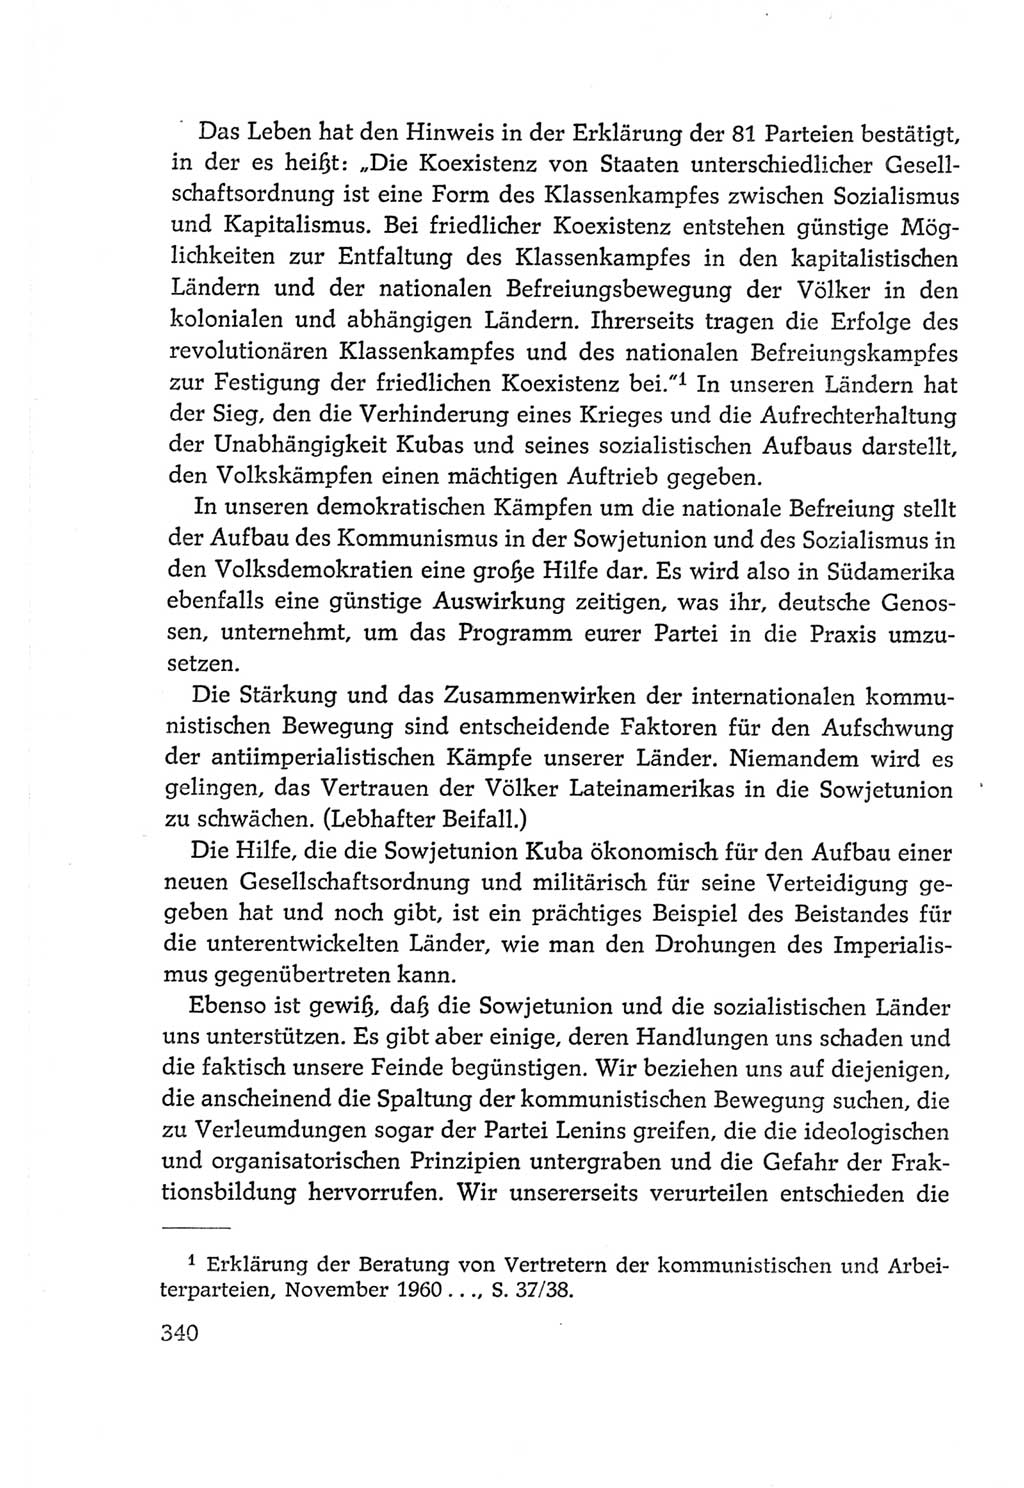 Protokoll der Verhandlungen des Ⅵ. Parteitages der Sozialistischen Einheitspartei Deutschlands (SED) [Deutsche Demokratische Republik (DDR)] 1963, Band Ⅱ, Seite 340 (Prot. Verh. Ⅵ. PT SED DDR 1963, Bd. Ⅱ, S. 340)